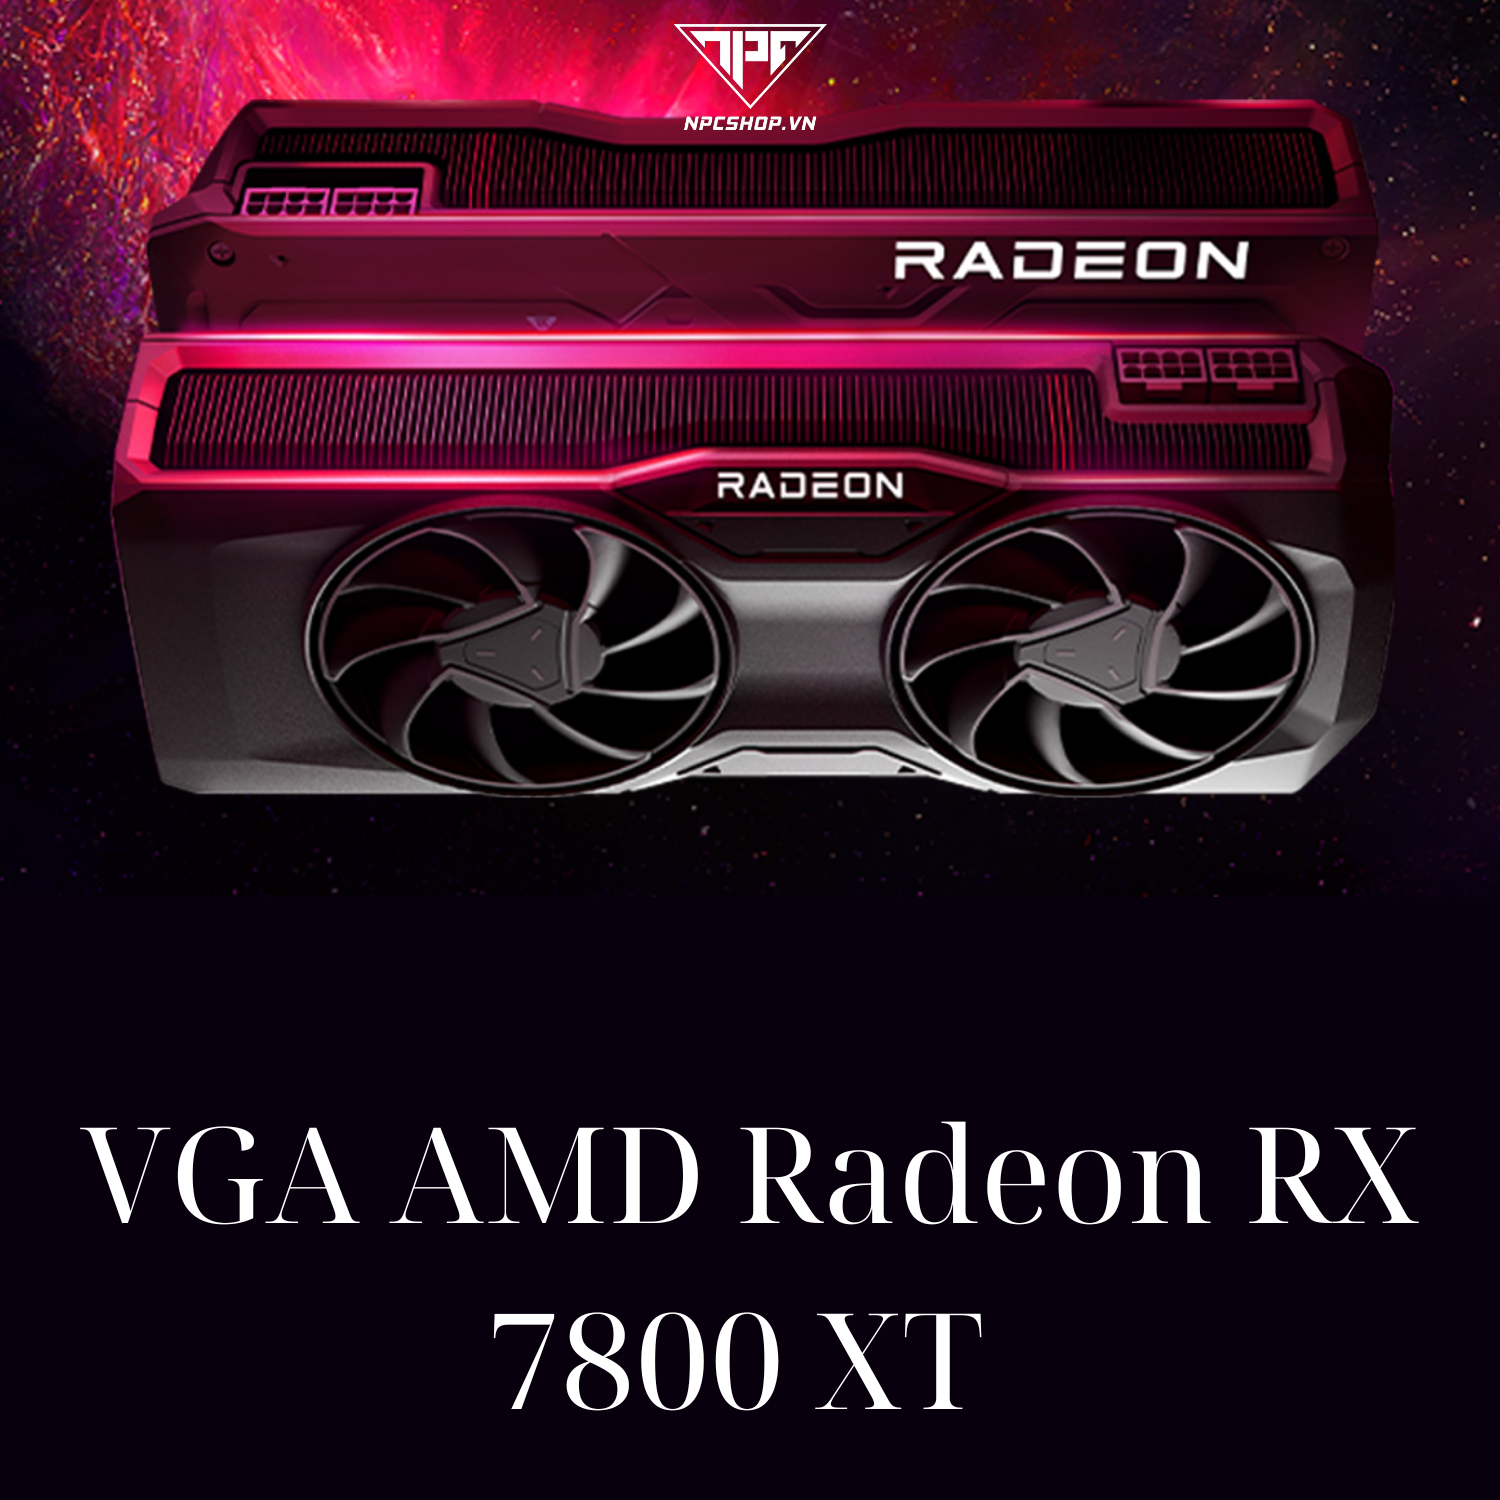 VGA AMD Radeon RX 7800 XT